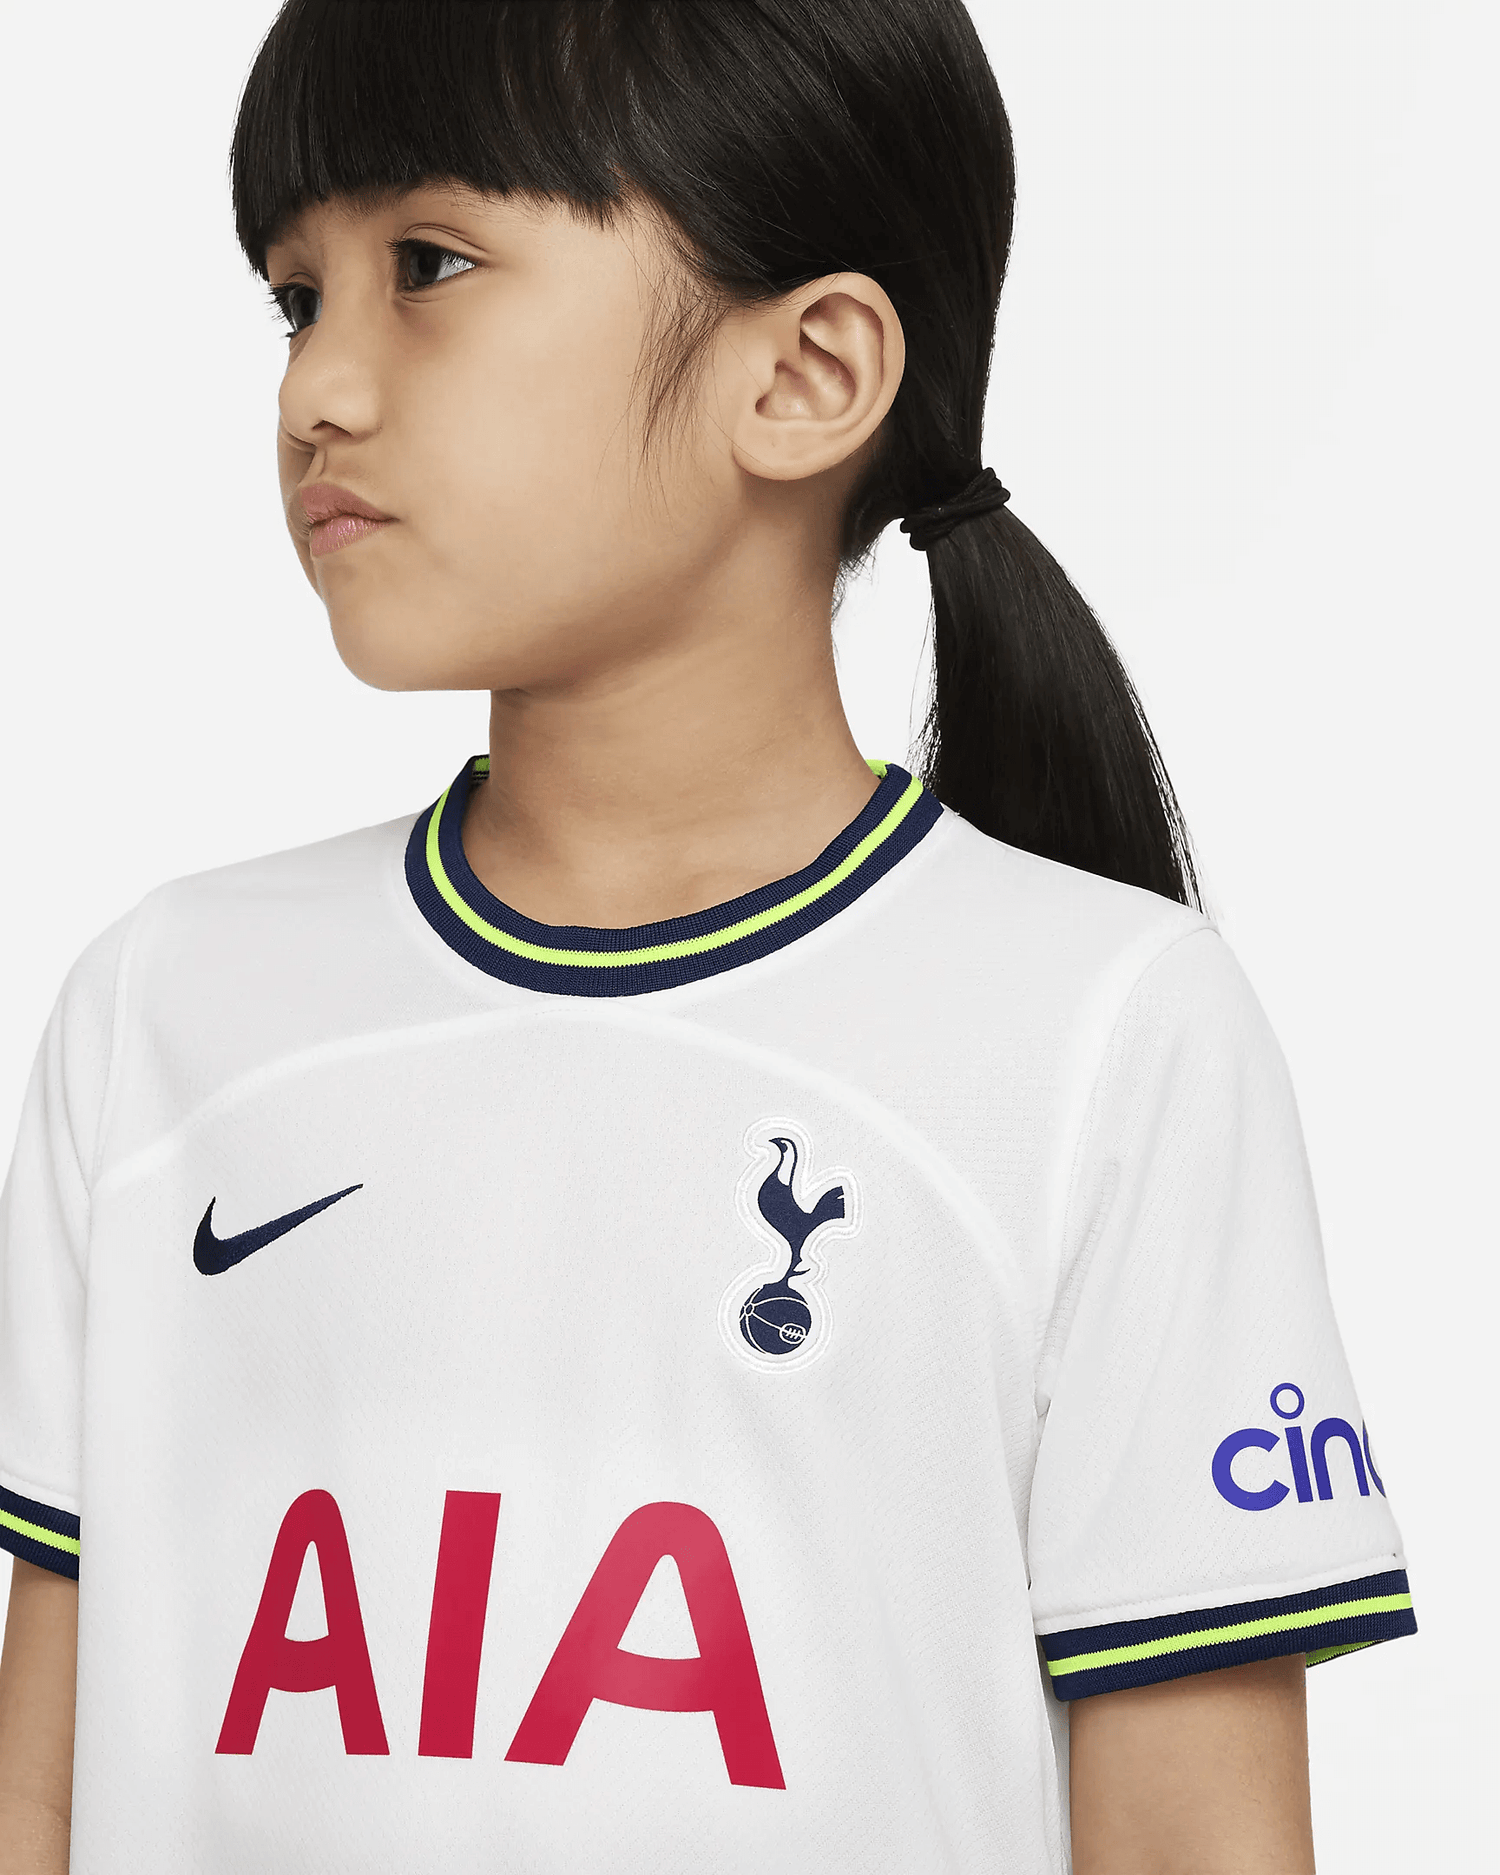 Tottenham Hotspur Home Shirt 2022/23, Official Nike Jersey